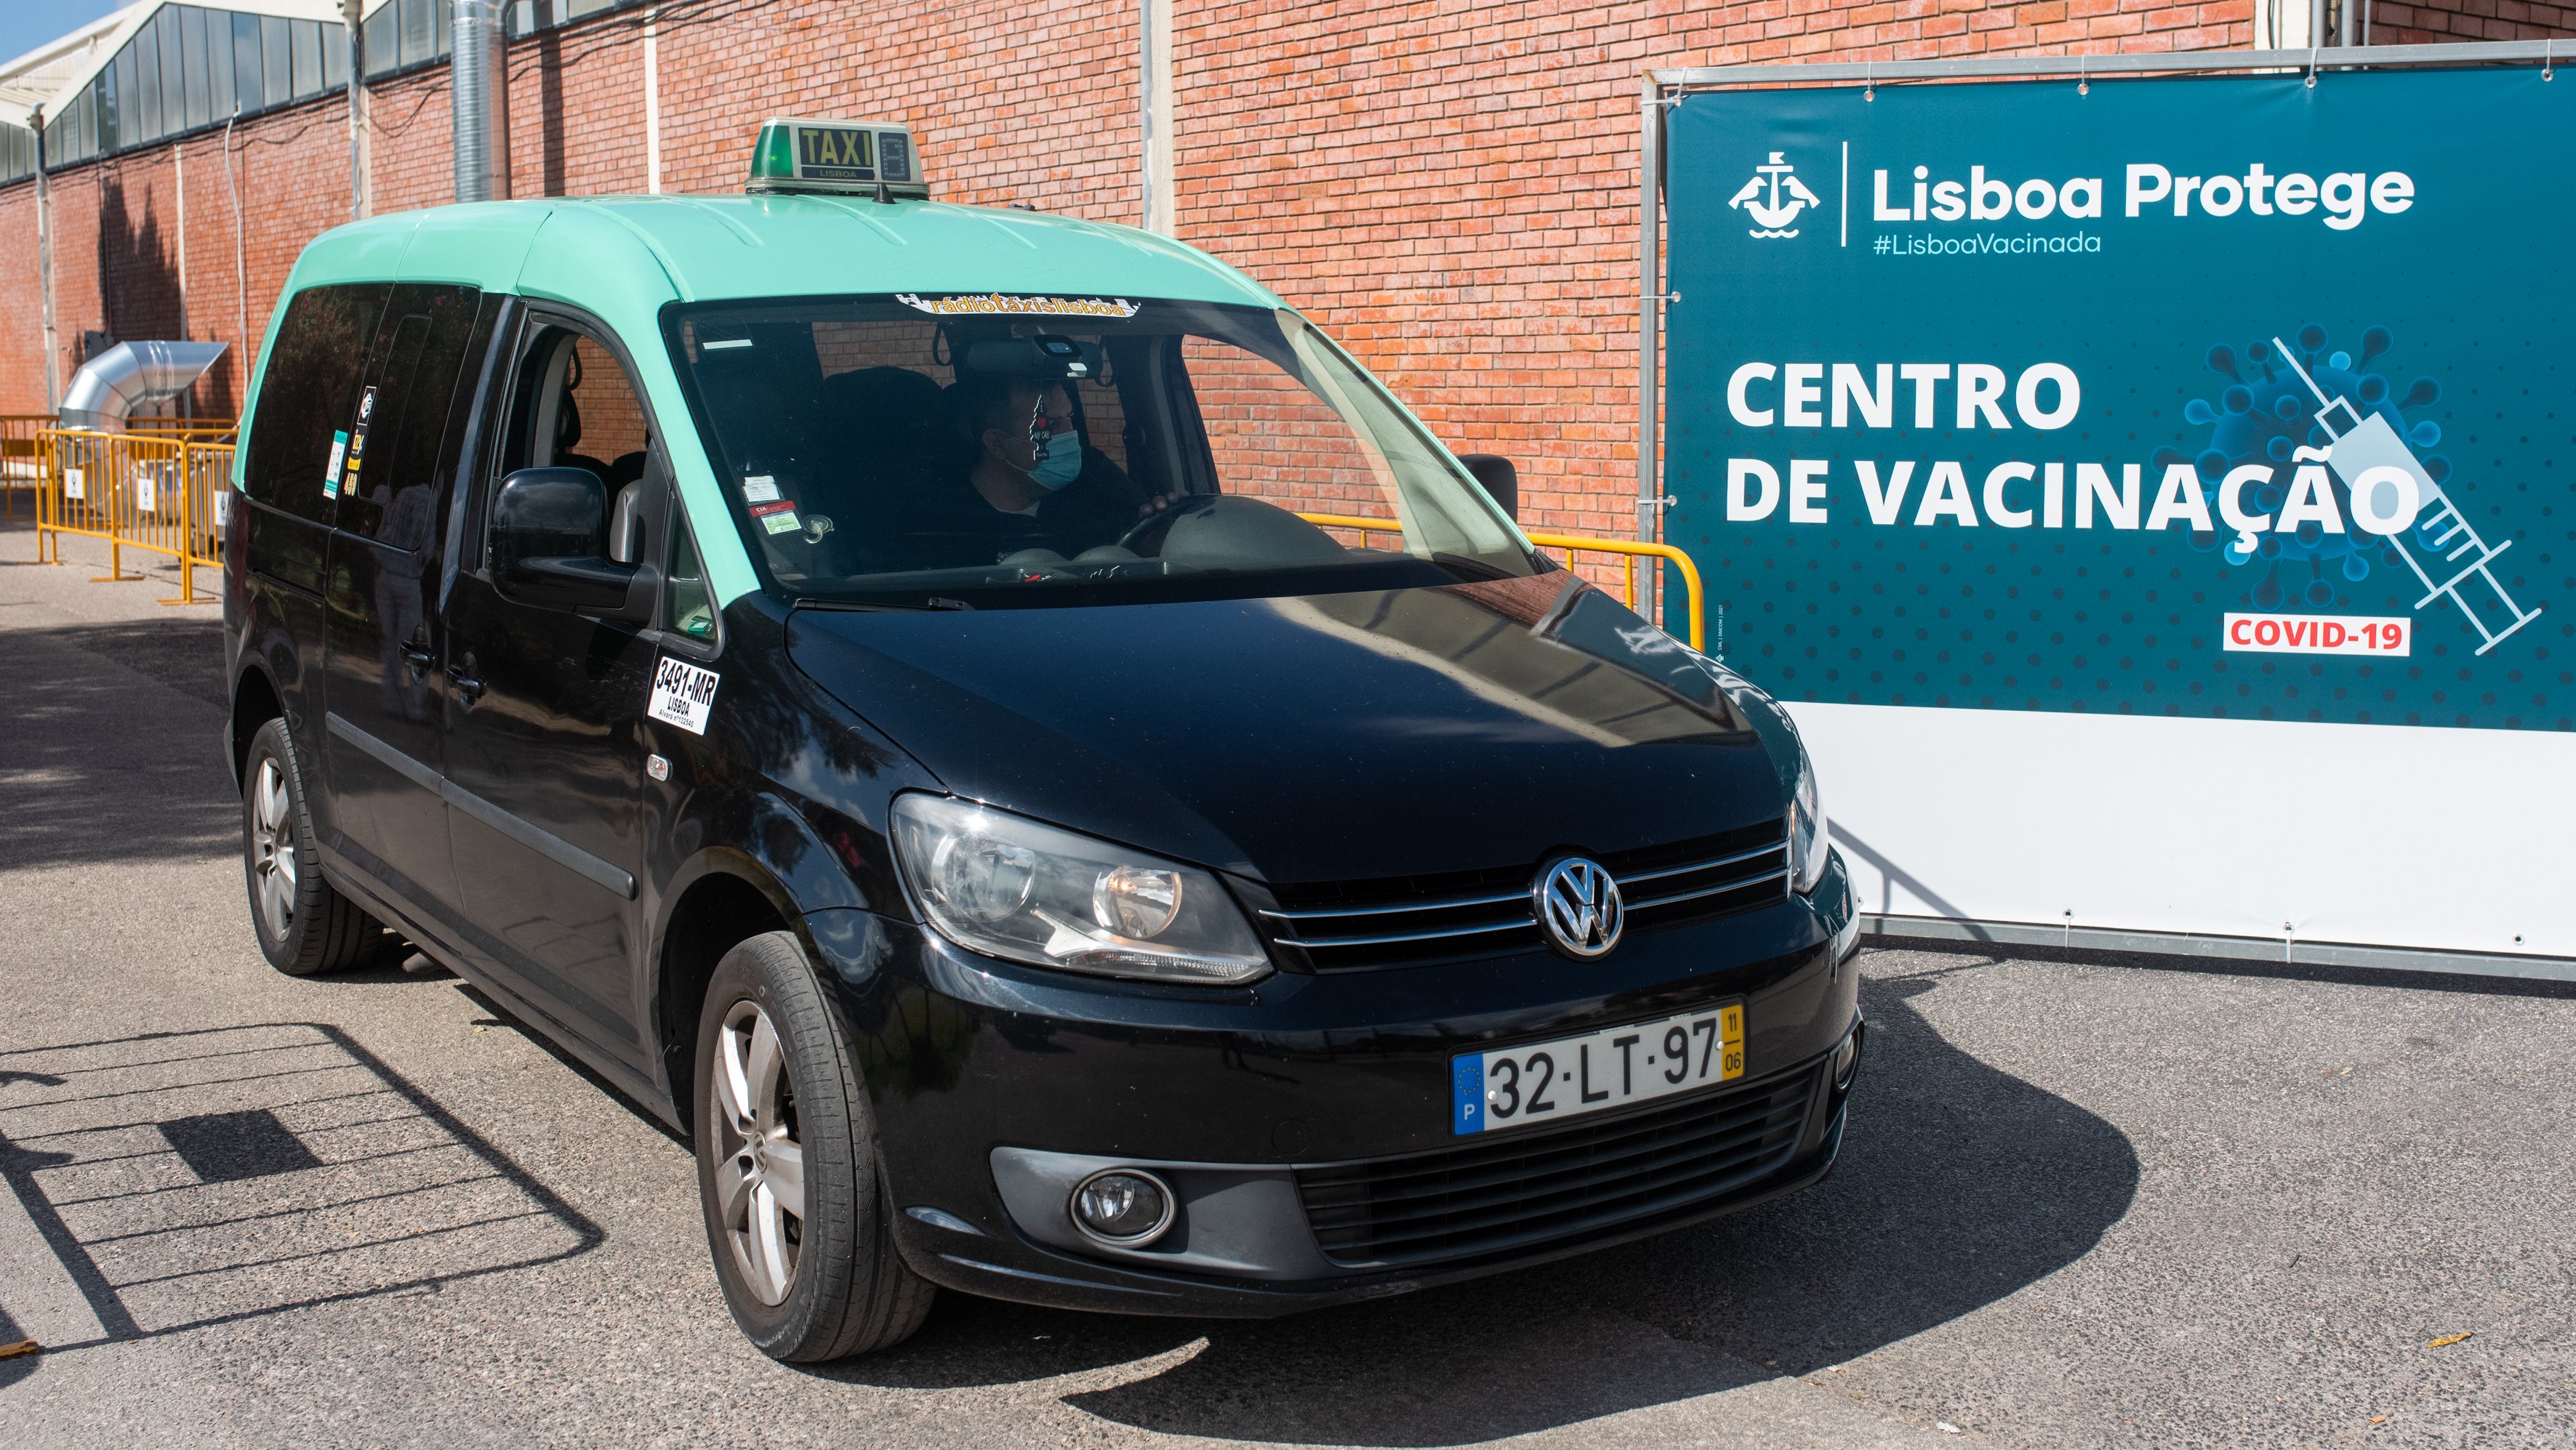 Táxi em Portugal durante a pandemia da Covid-19